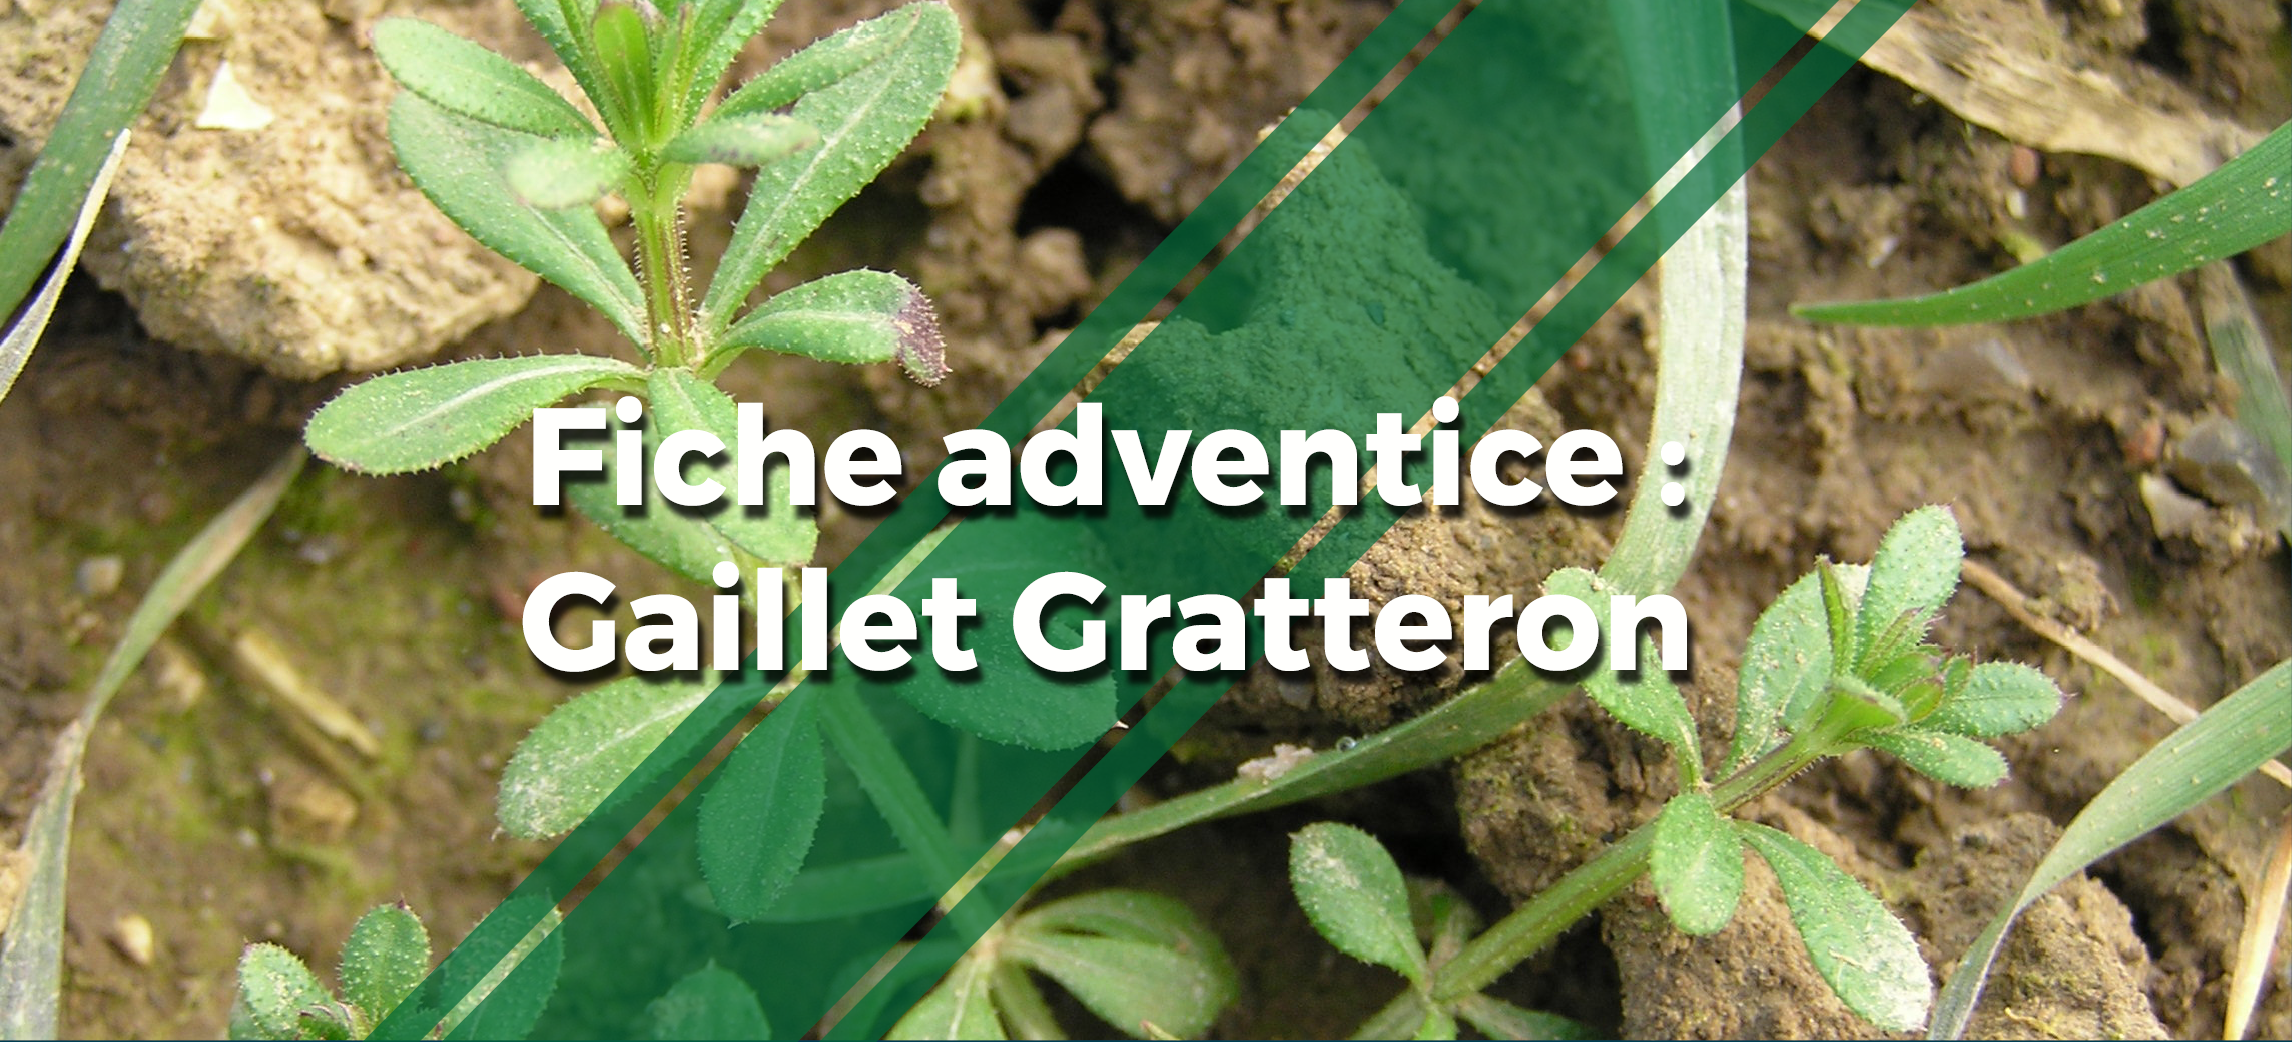 une photo d'une plante de gaillet gratteron avec le texte "Fiche adventice gaillet gratteron"